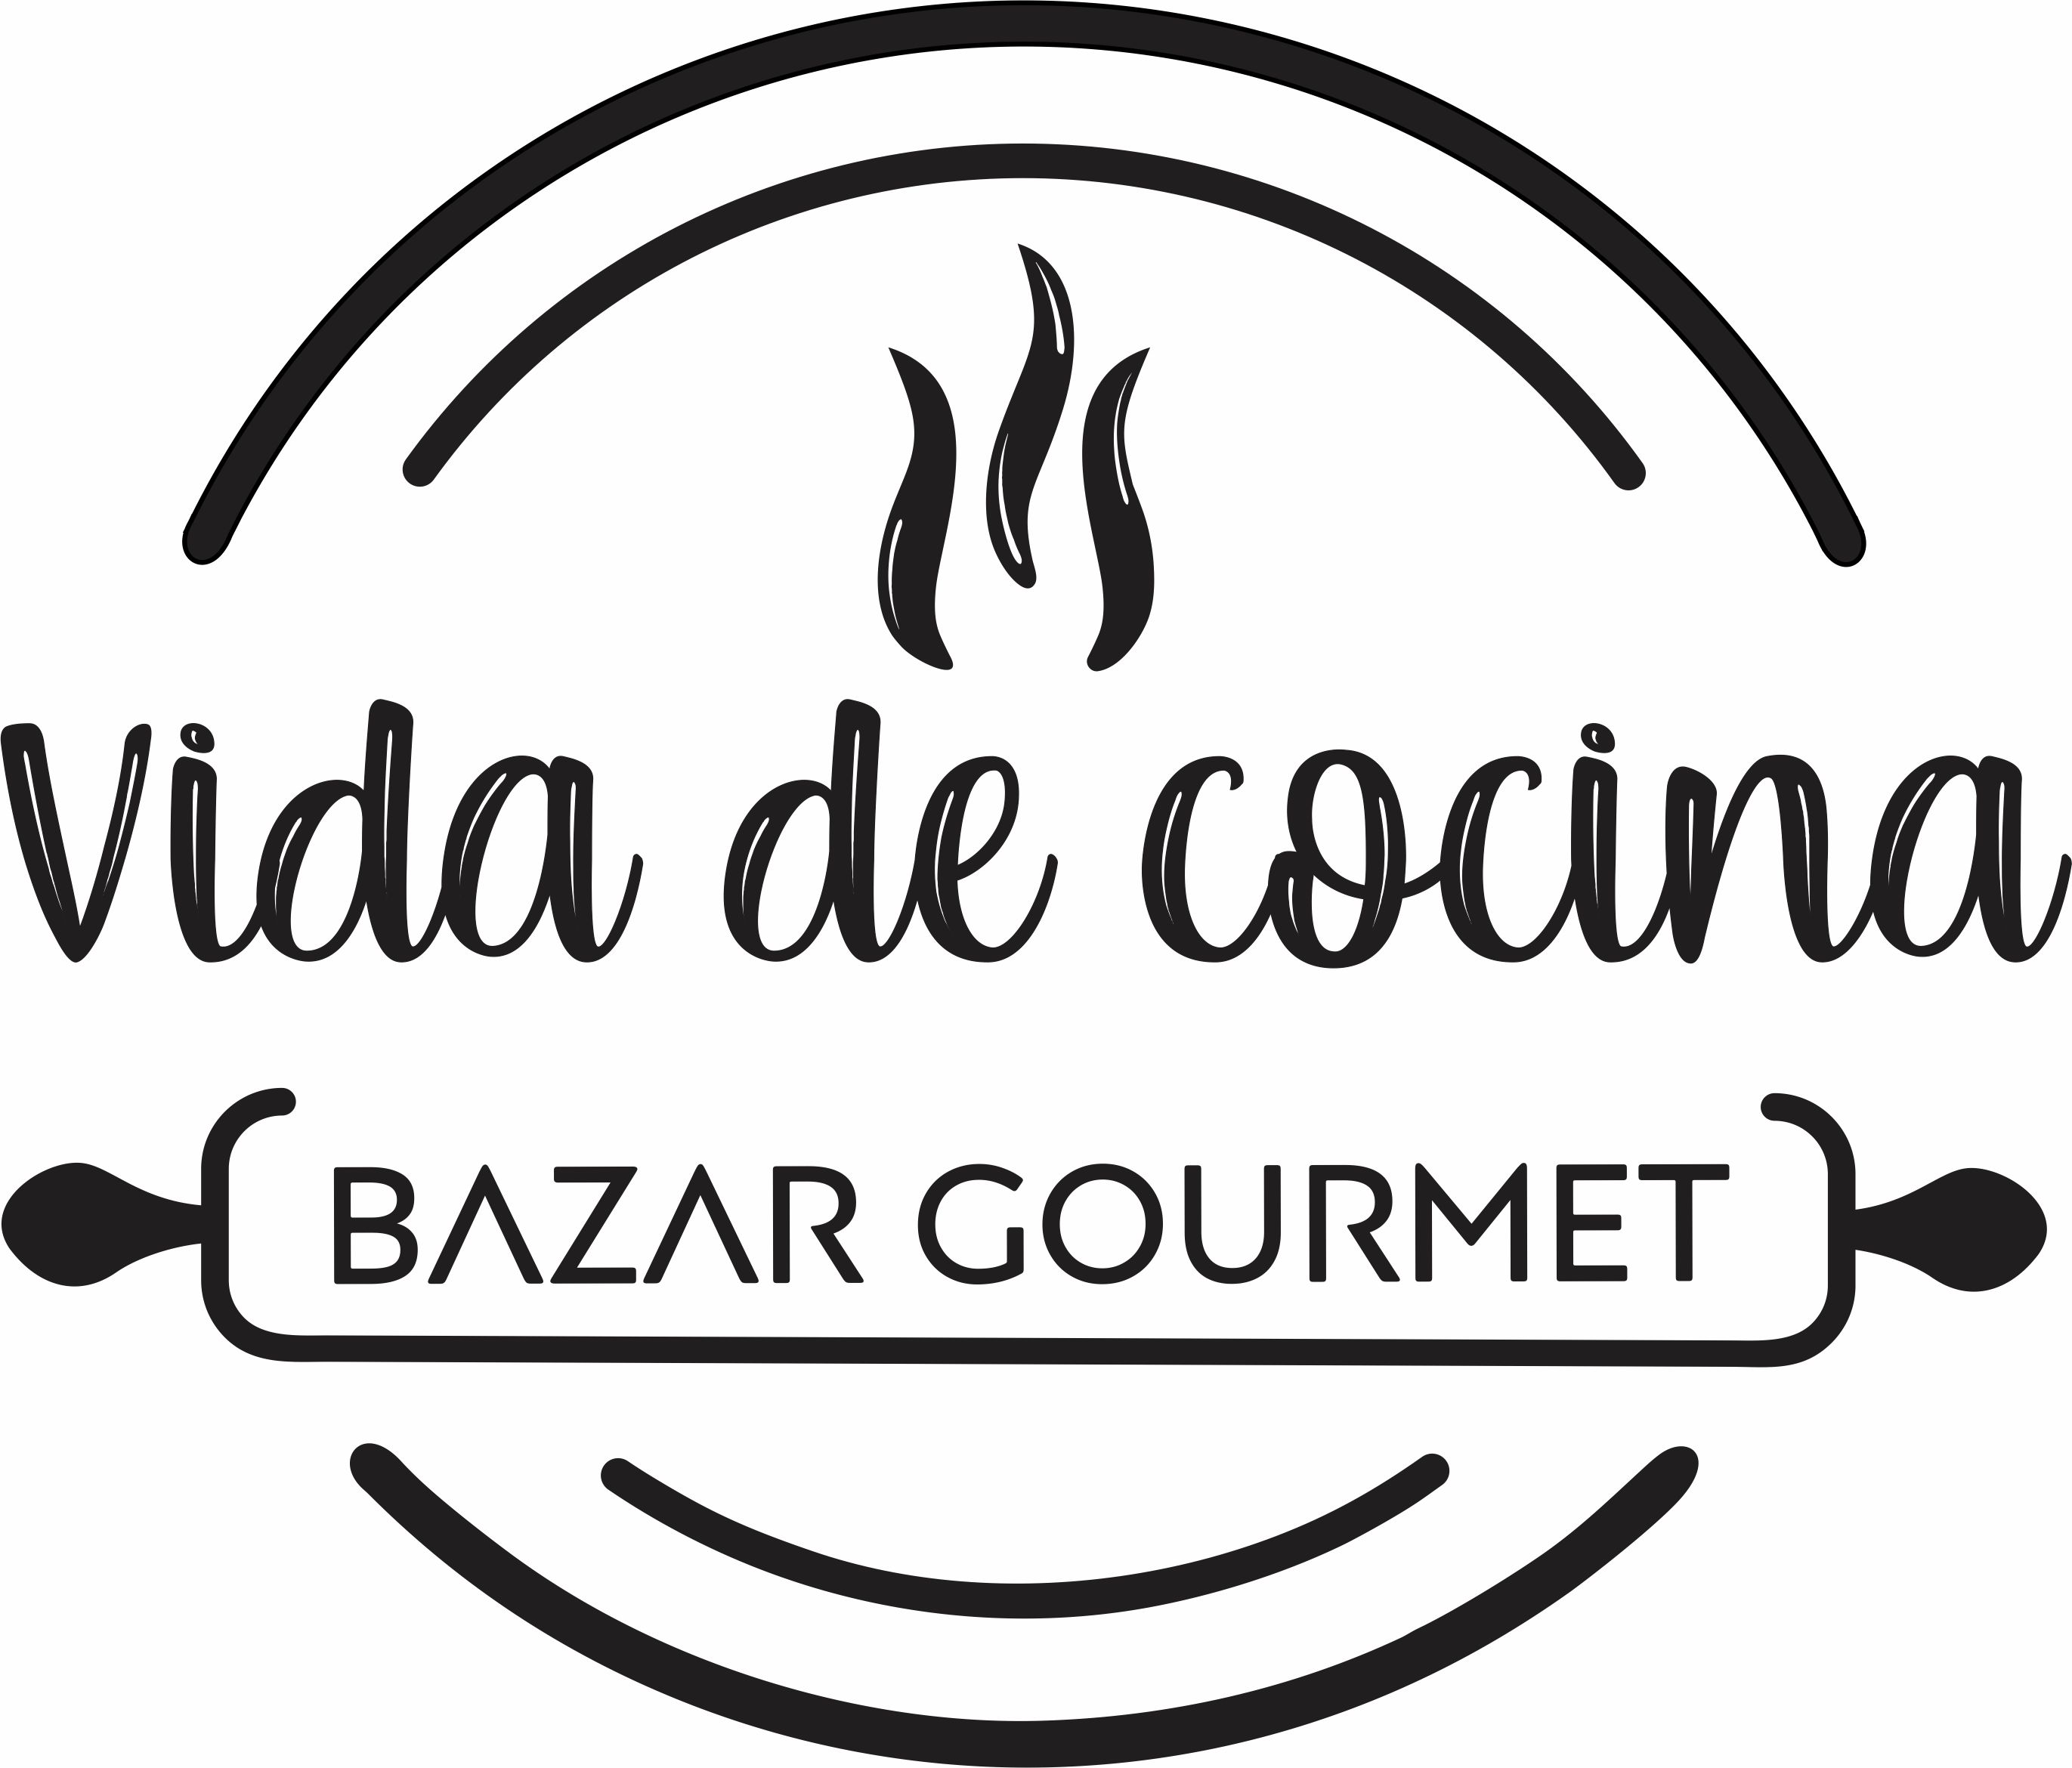 Vida de Cocina Bazar Gourmet